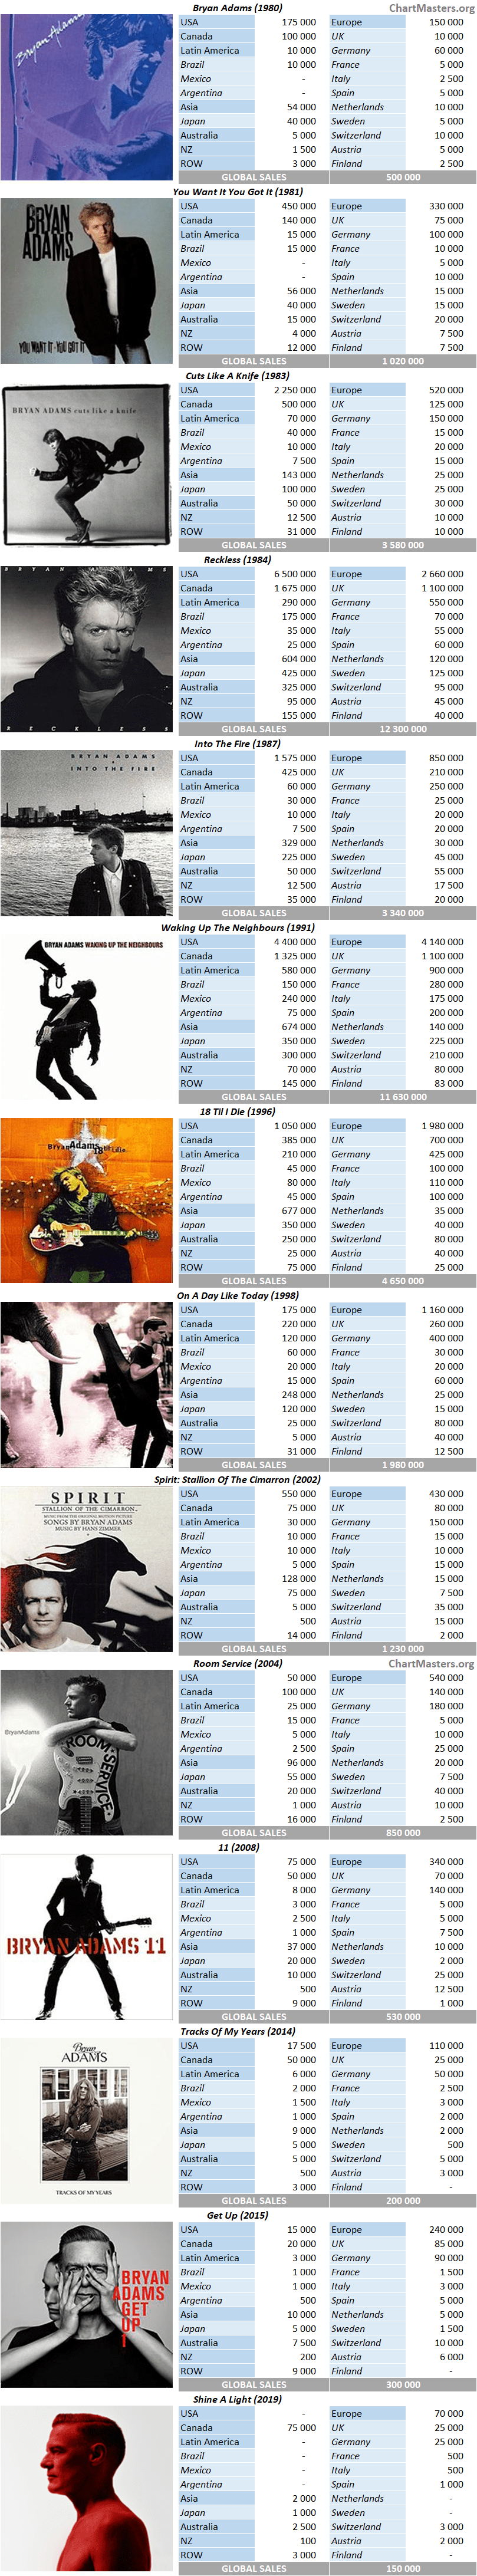 CSPC Bryan Adams studio album sales by market